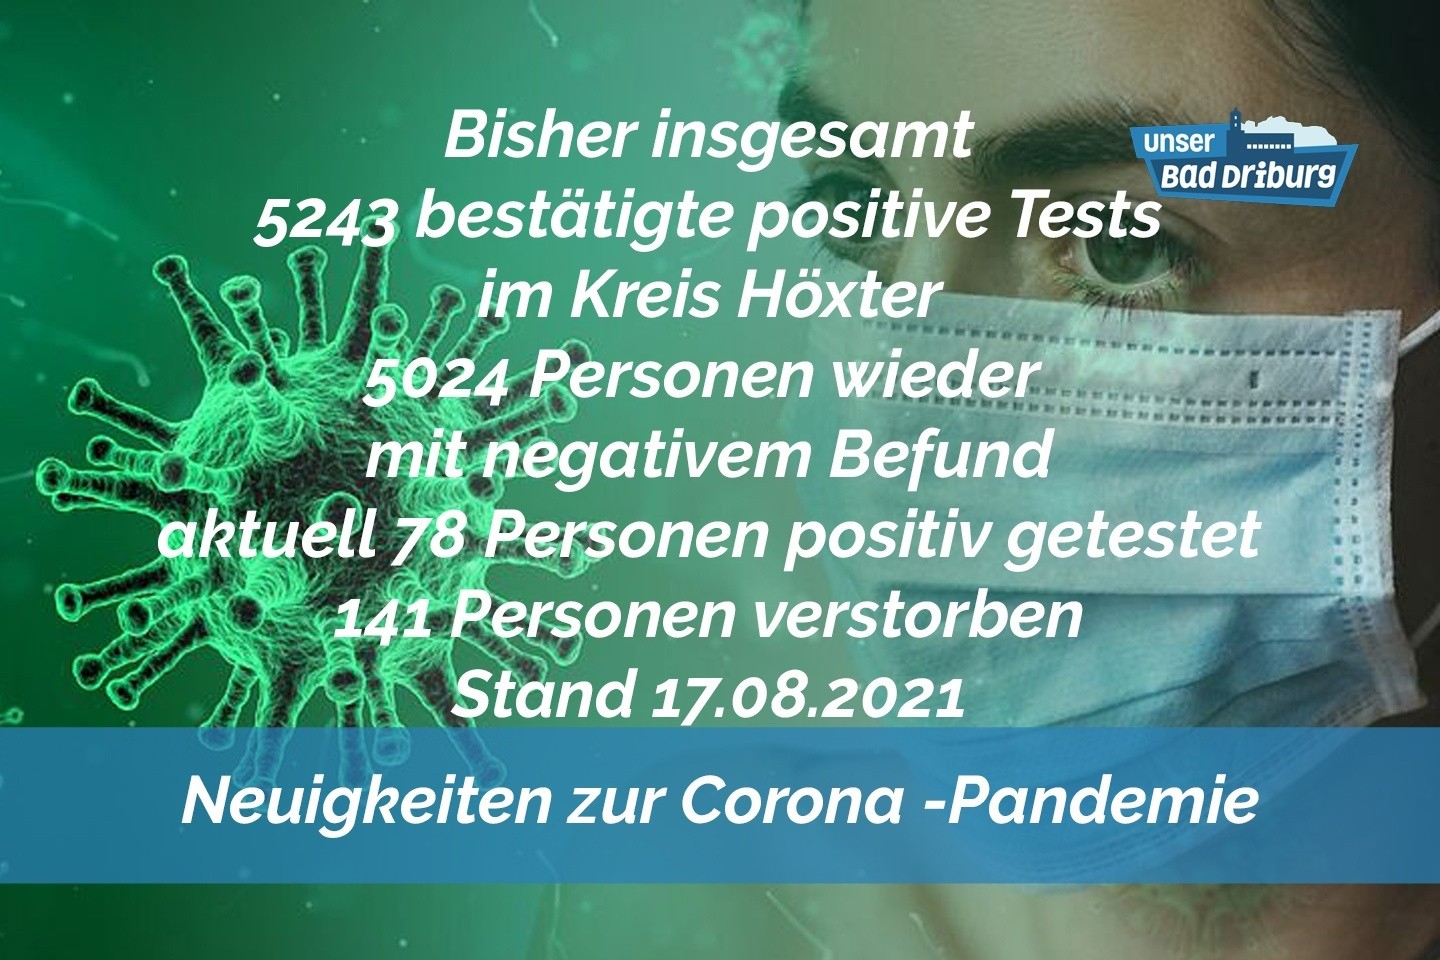 Update 17. August: 7 weitere amtlich positive Tests im Kreis Höxter